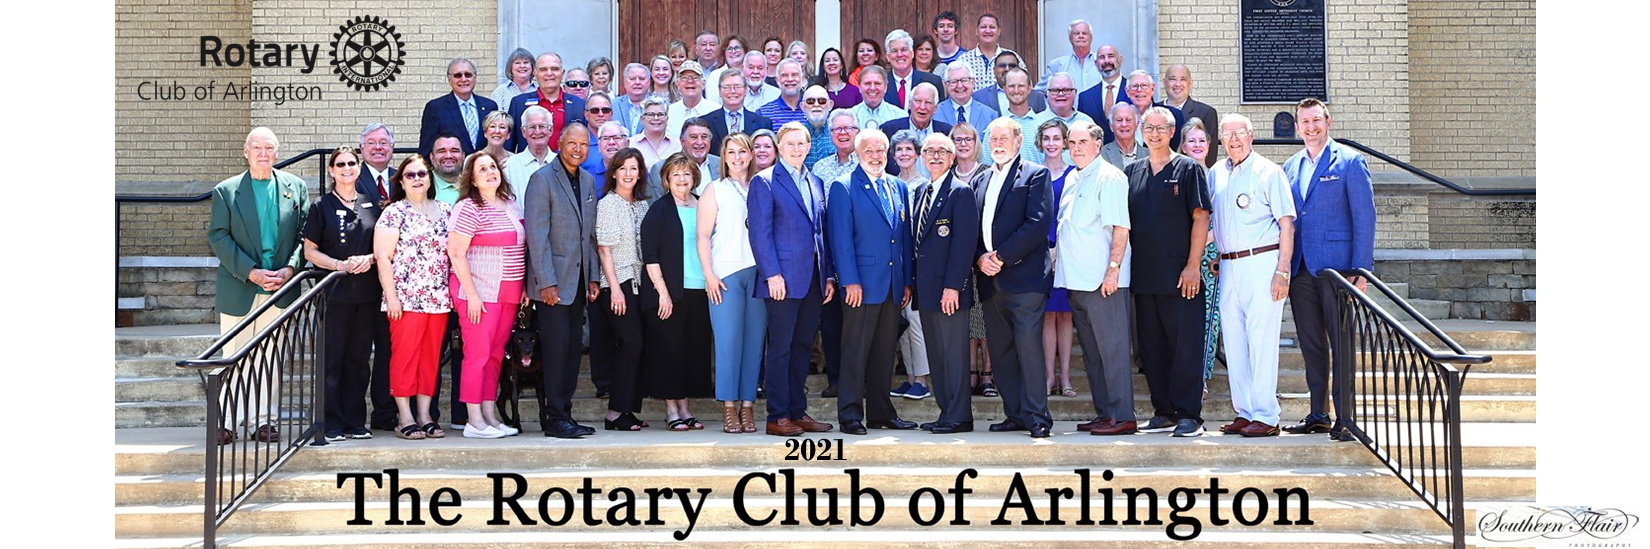 2021 Arlington Rotary Club Members